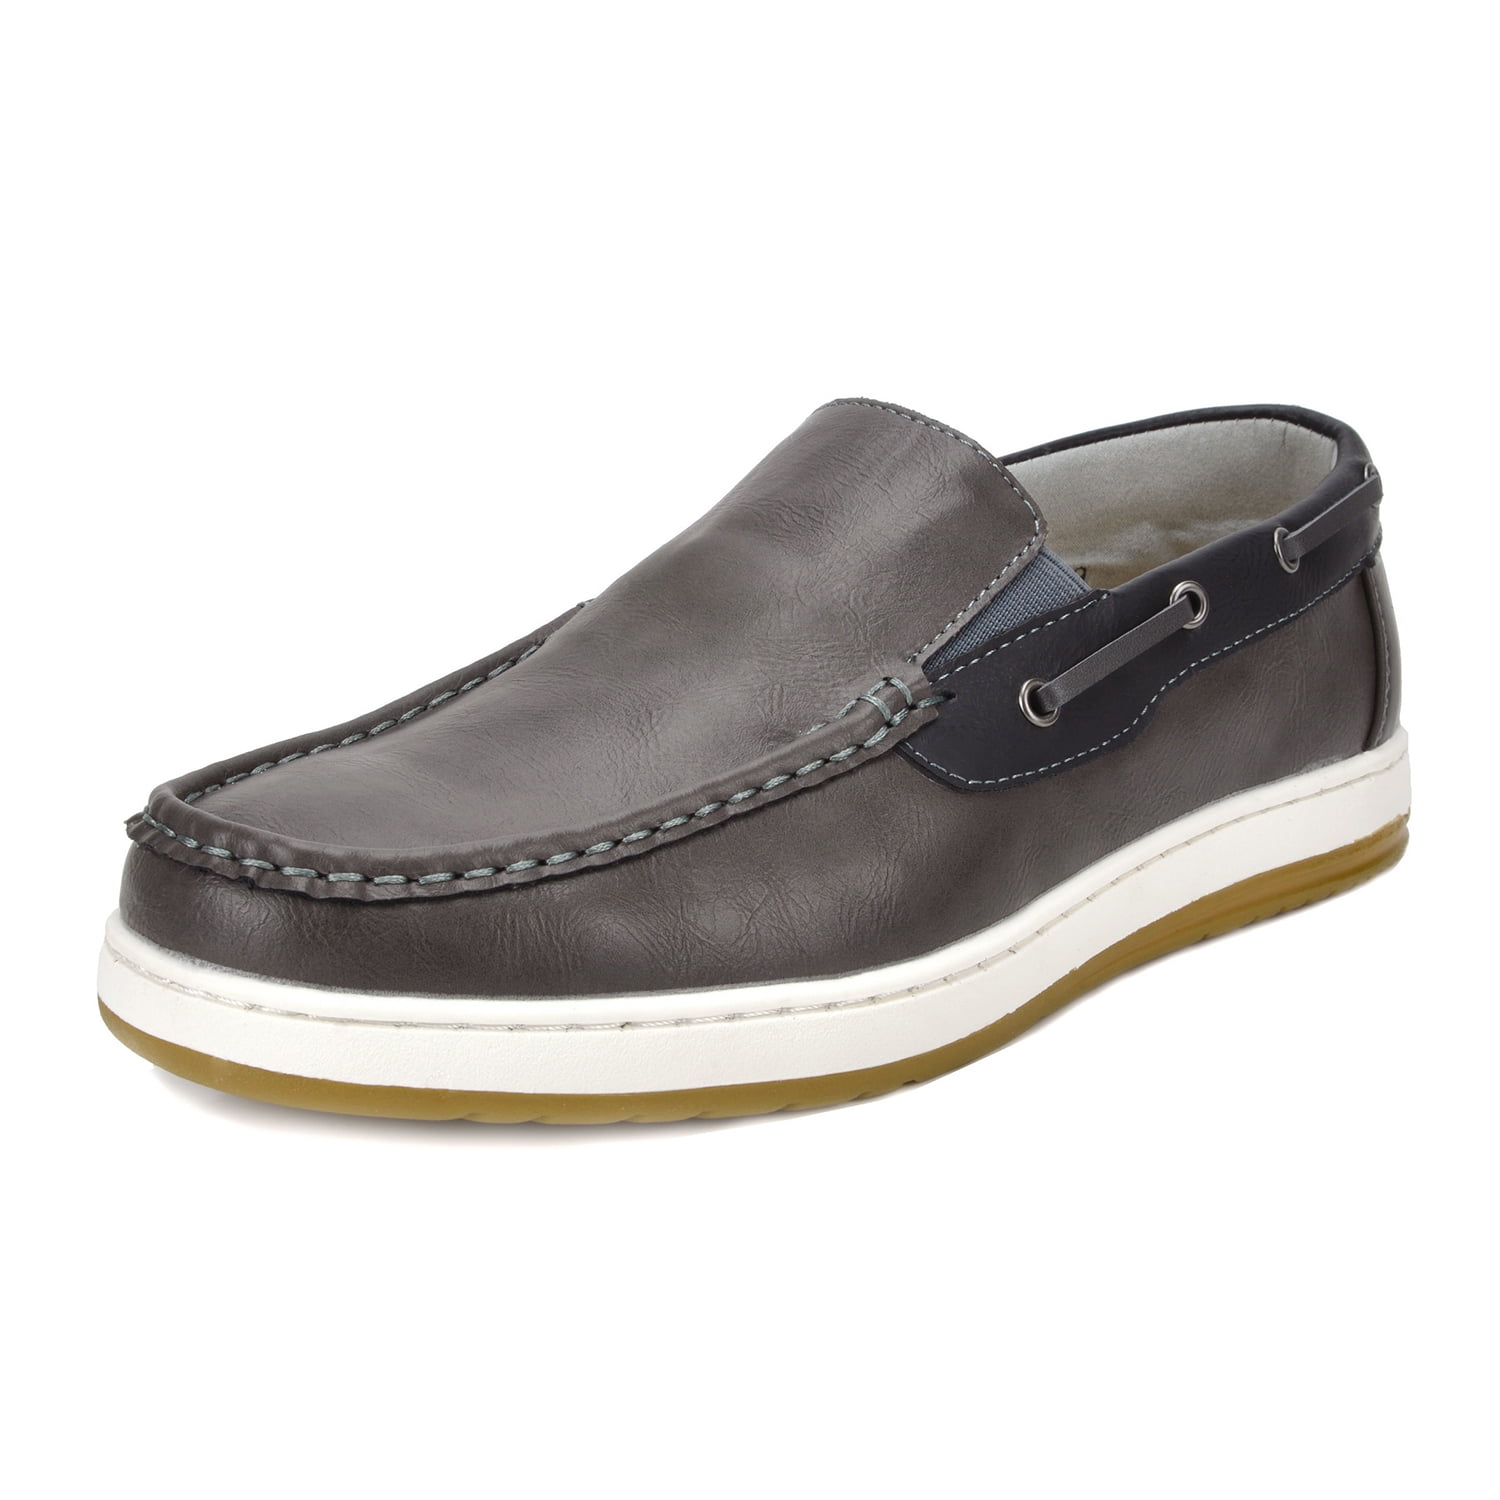 Bruno Marc Men's Moccasins Boat Shoes Lightweight Slip on Loafers